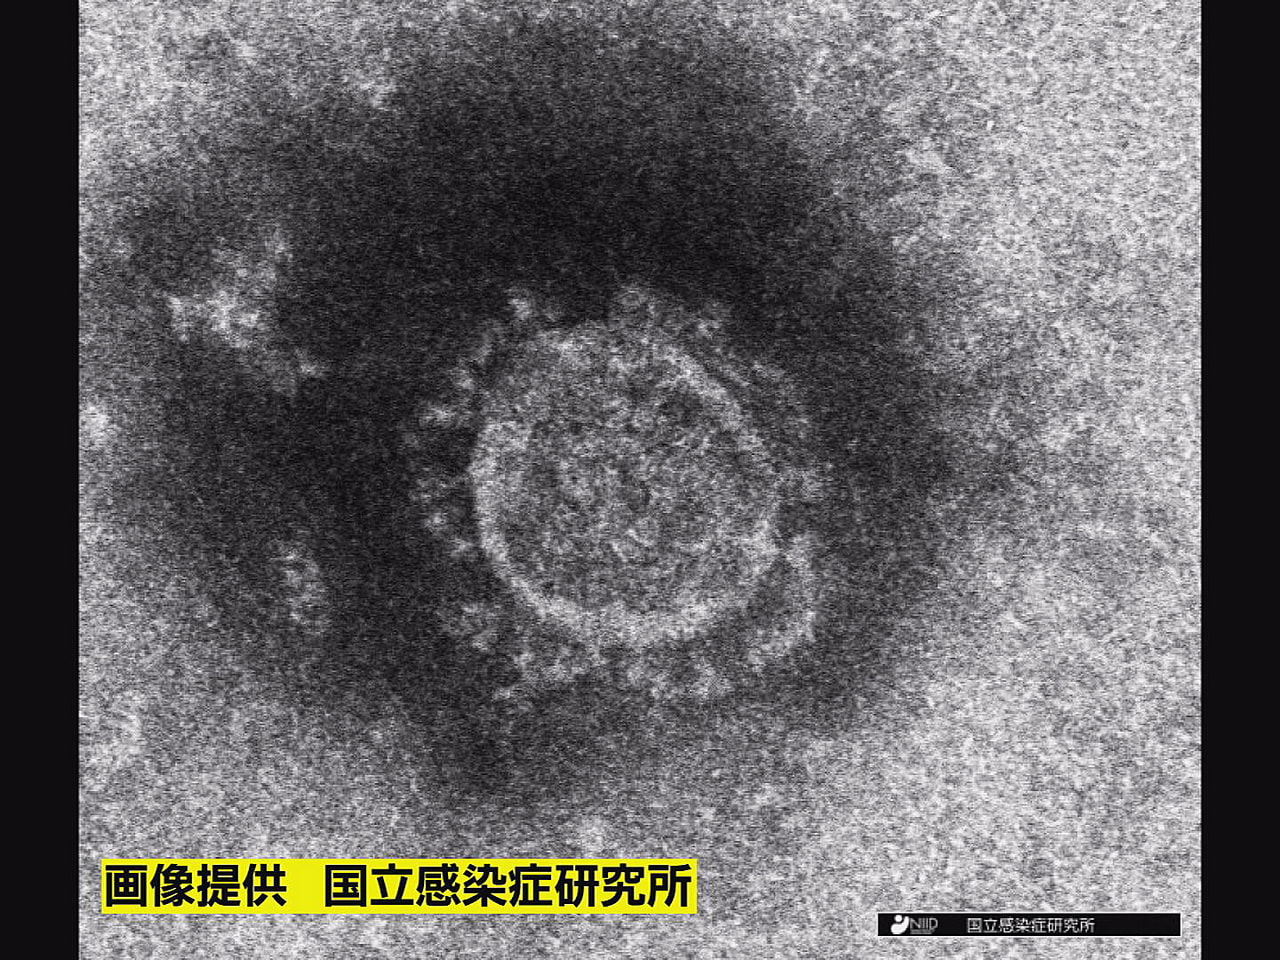 岐阜県は８日、新型コロナウイルスの感染が新たに７４人確認されたと発表しました。 ...